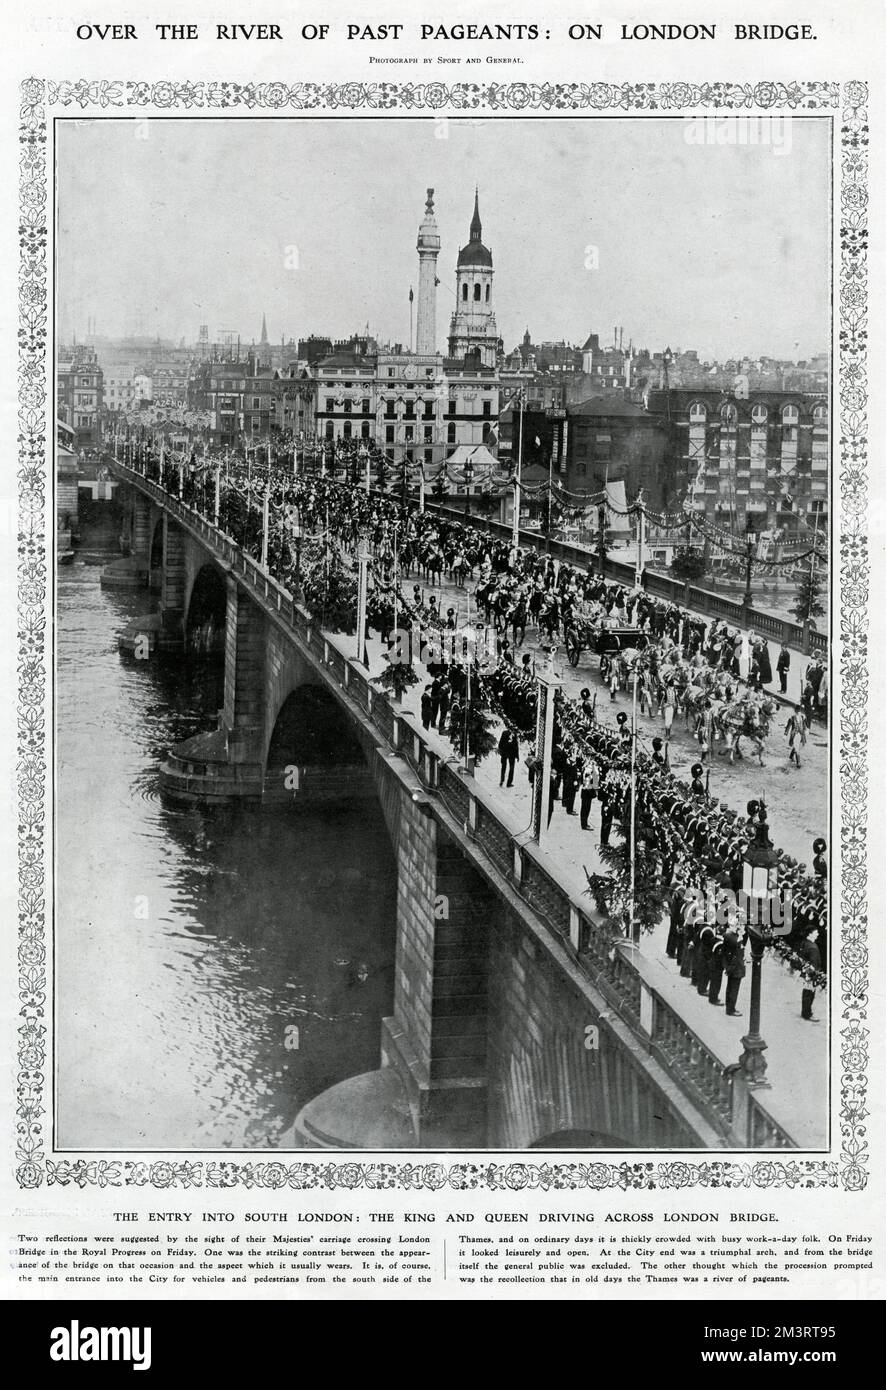 Die Prozession am Tag nach der Krönung, wobei König George und Königin Mary die London Bridge überqueren, den Haupteingang, um in einer offenen Kutsche nach South London zu gelangen. Datum: 23. Juni 1911 Stockfoto